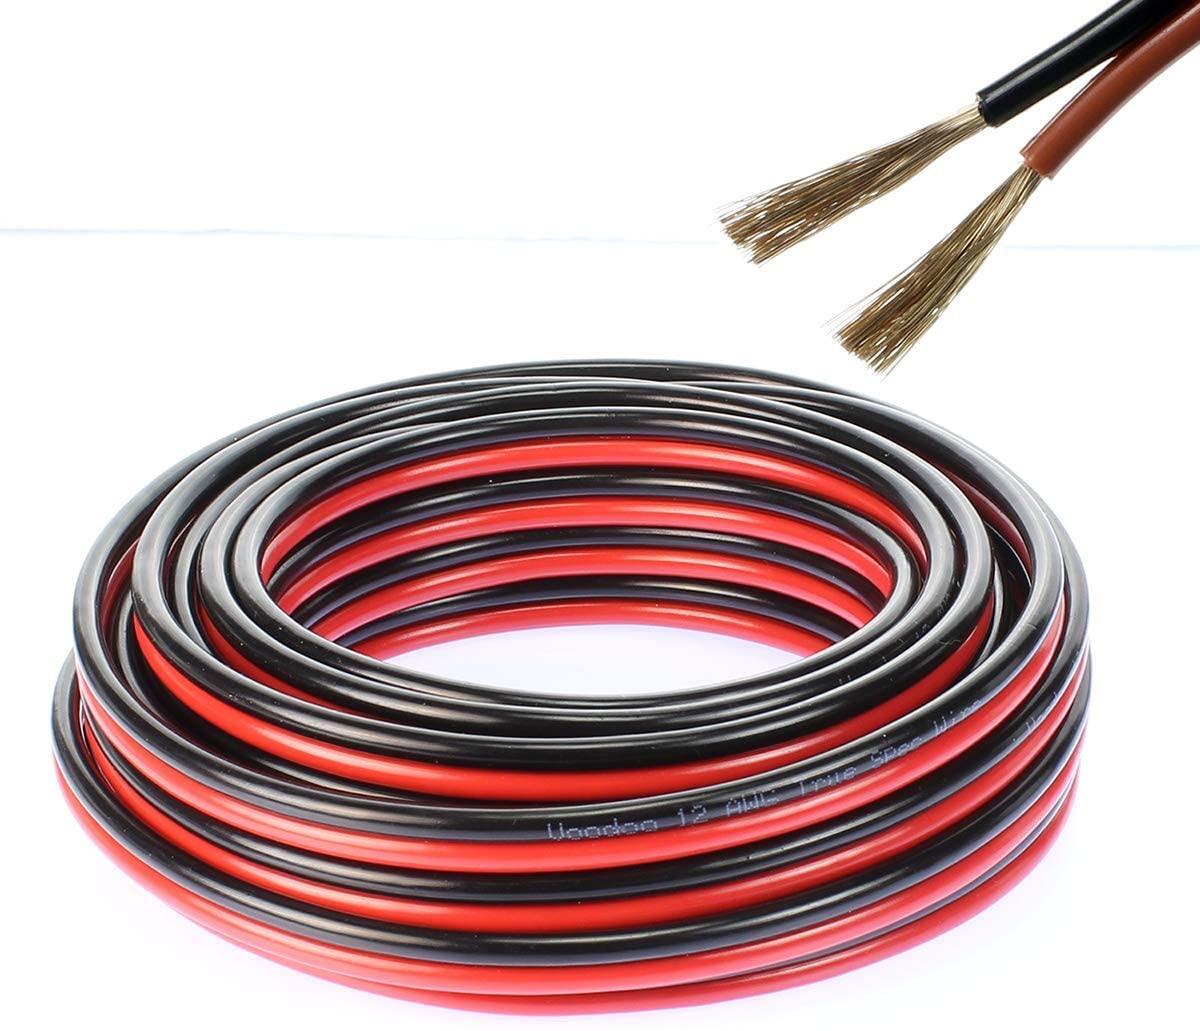 สายไฟ แดงดำ 15awg (1.5 mm²) สายลำโพง สายไฟคู่ สายคู่ electrical wire cable เครื่องเสียง รถยนต์ car a สี ชุด 5 เมตร สี ชุด 5 เมตร